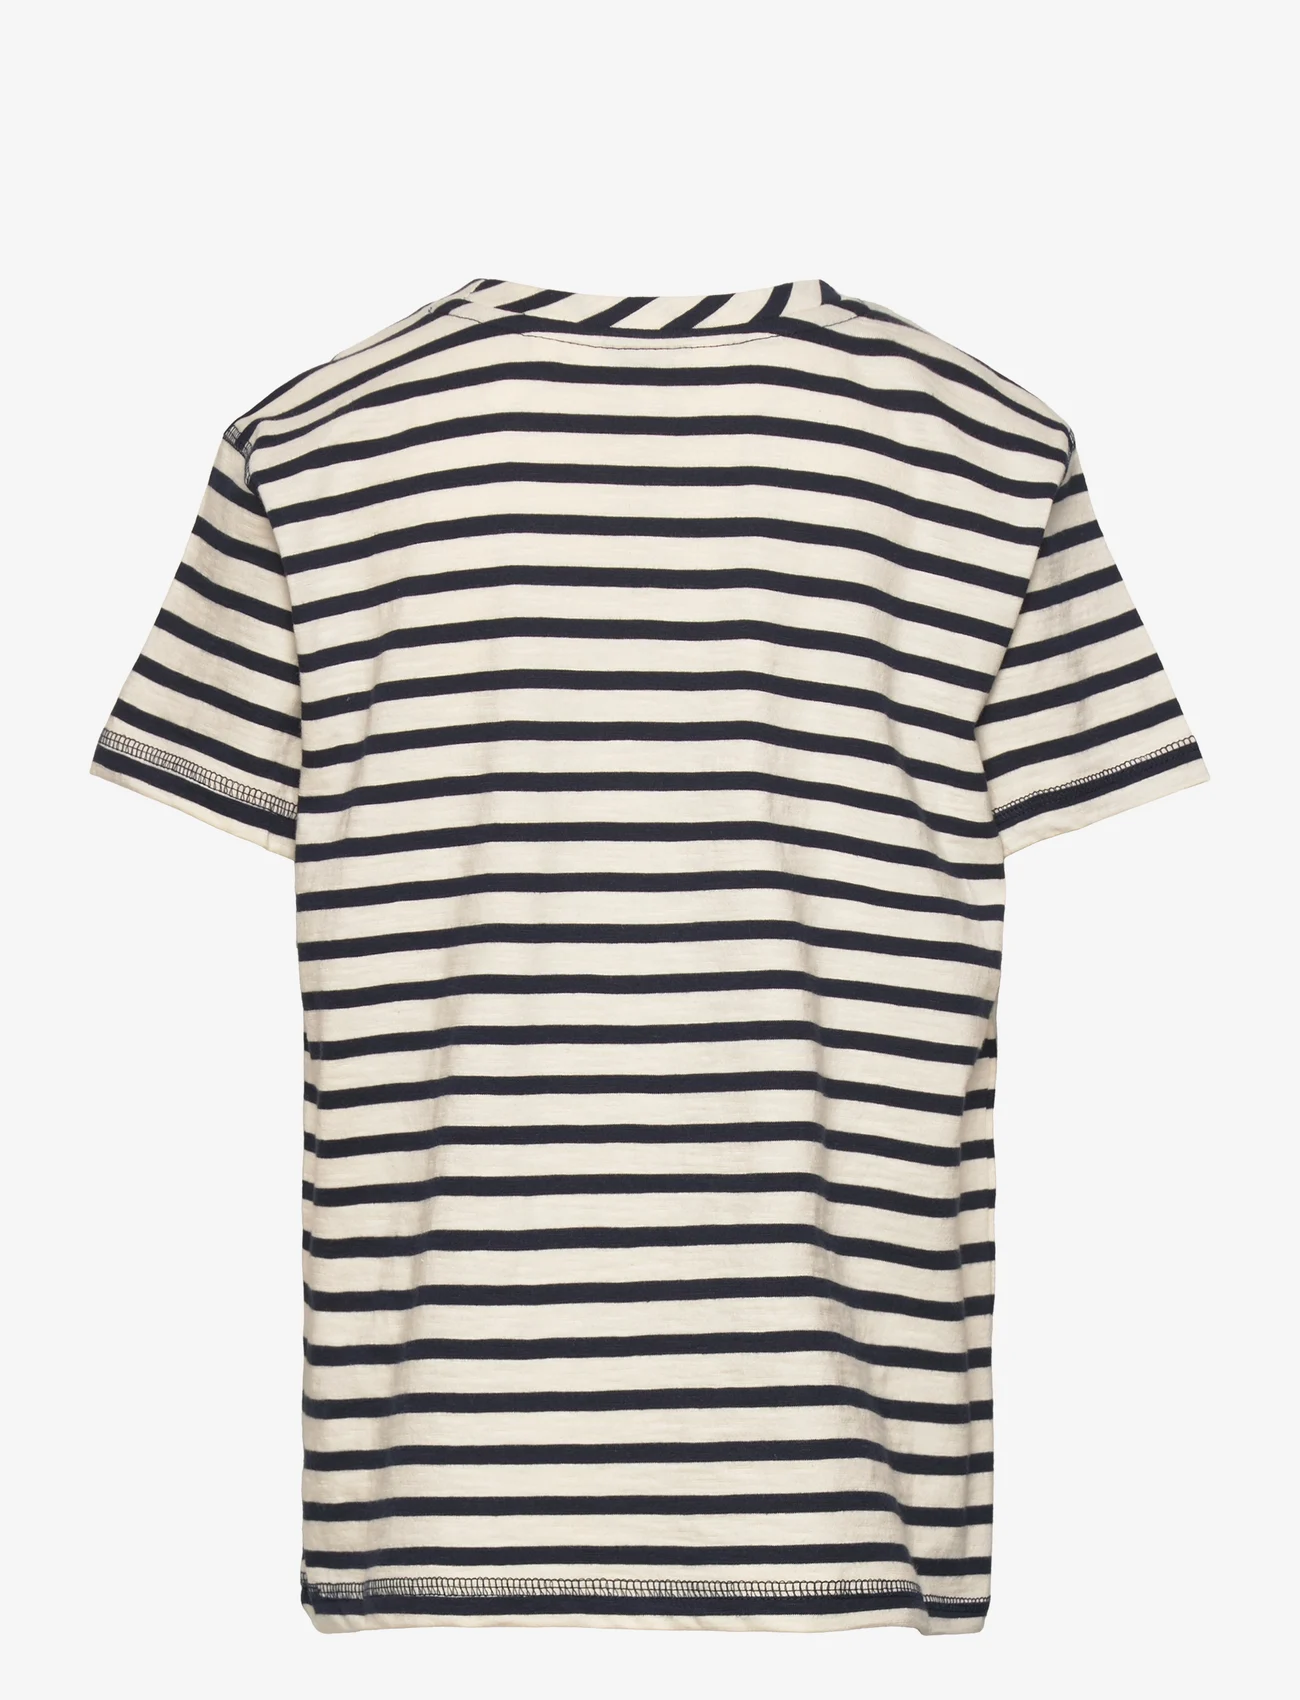 ebbe Kids - Steven t-shirt - short-sleeved - offwhite stripe - 1